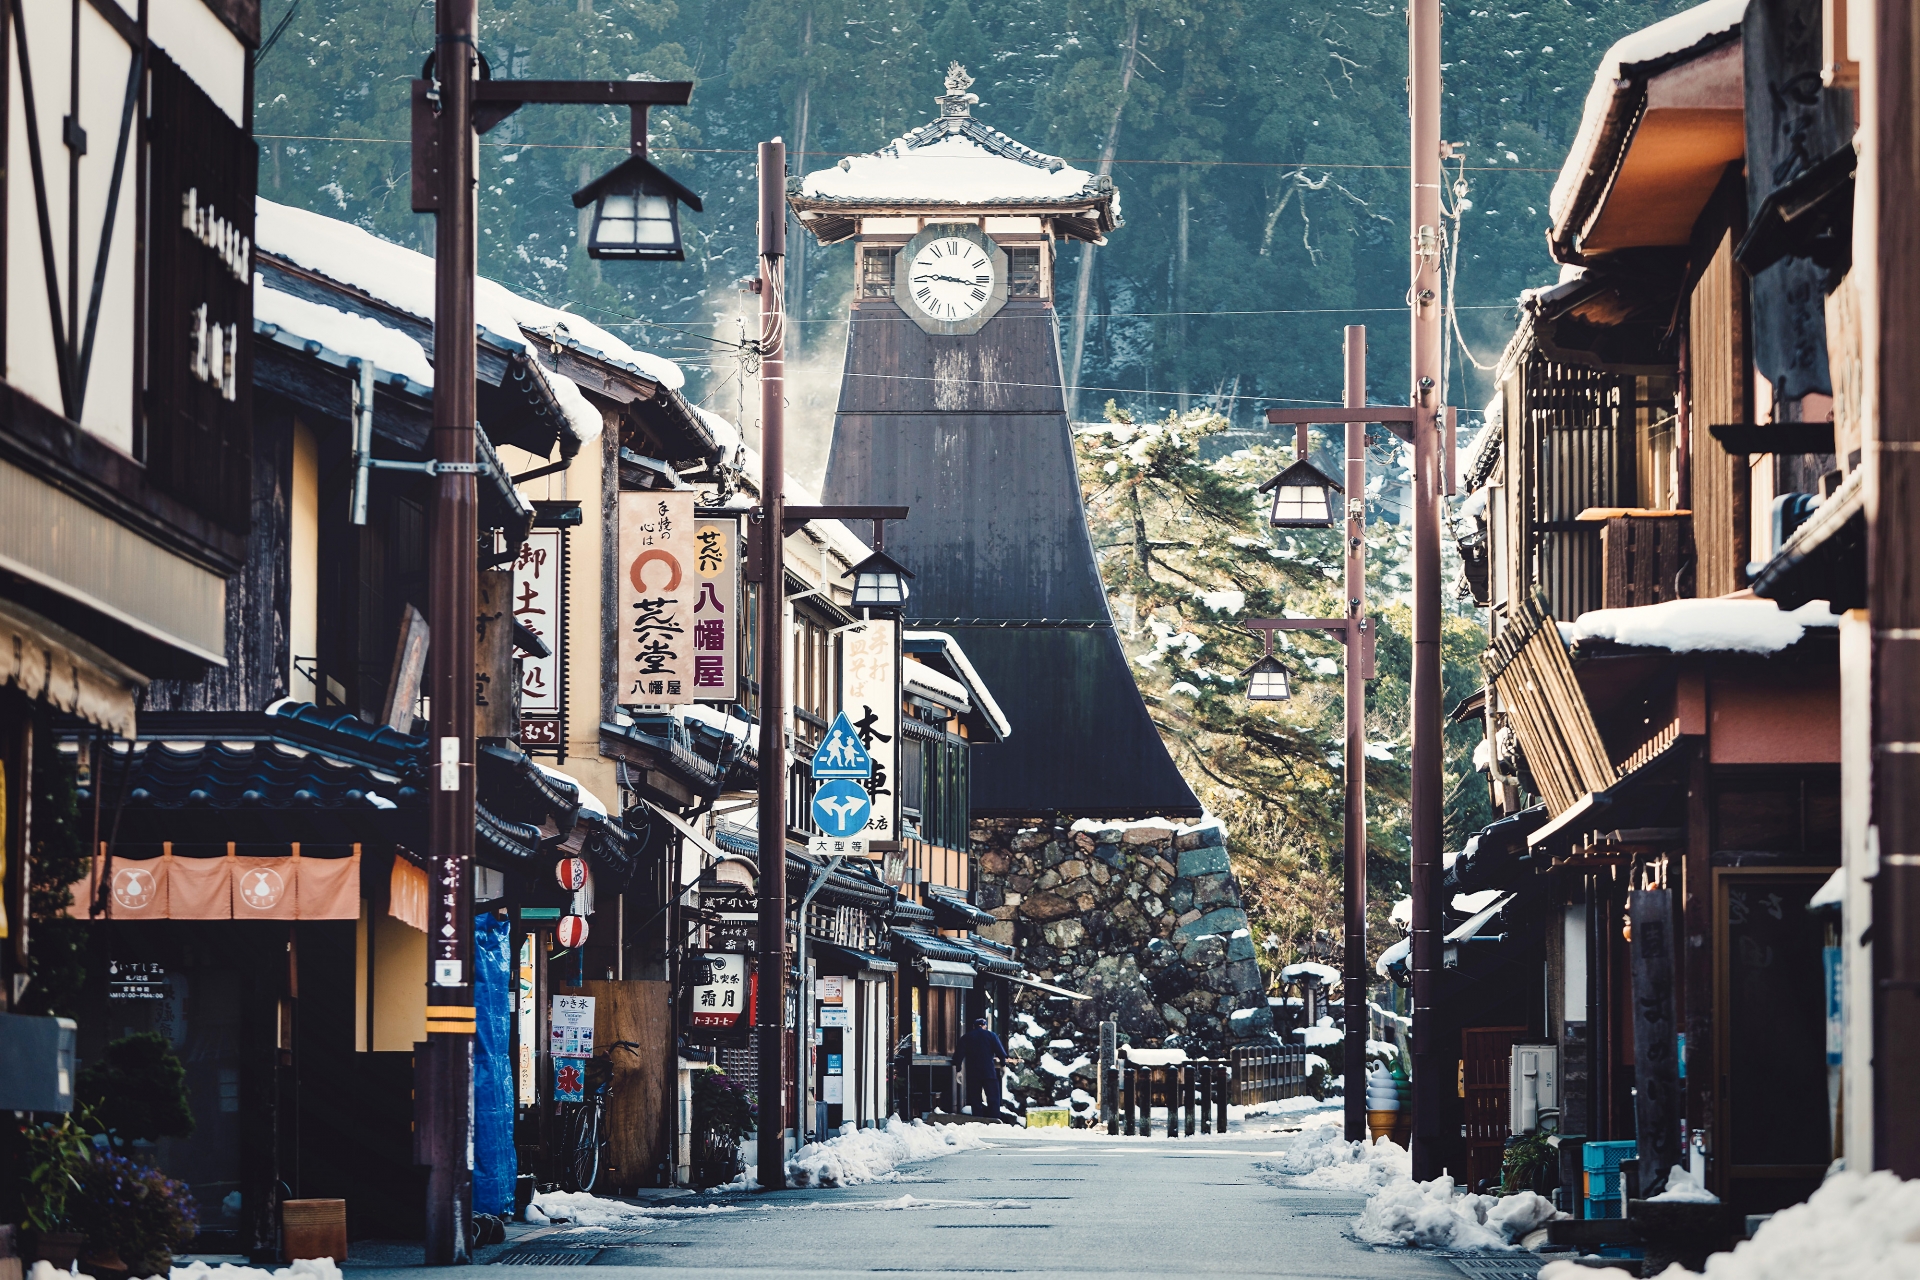 兵庫県豊岡市出石町の「辰鼓楼」。明治4年に建てられた日本最古年の時計台です。